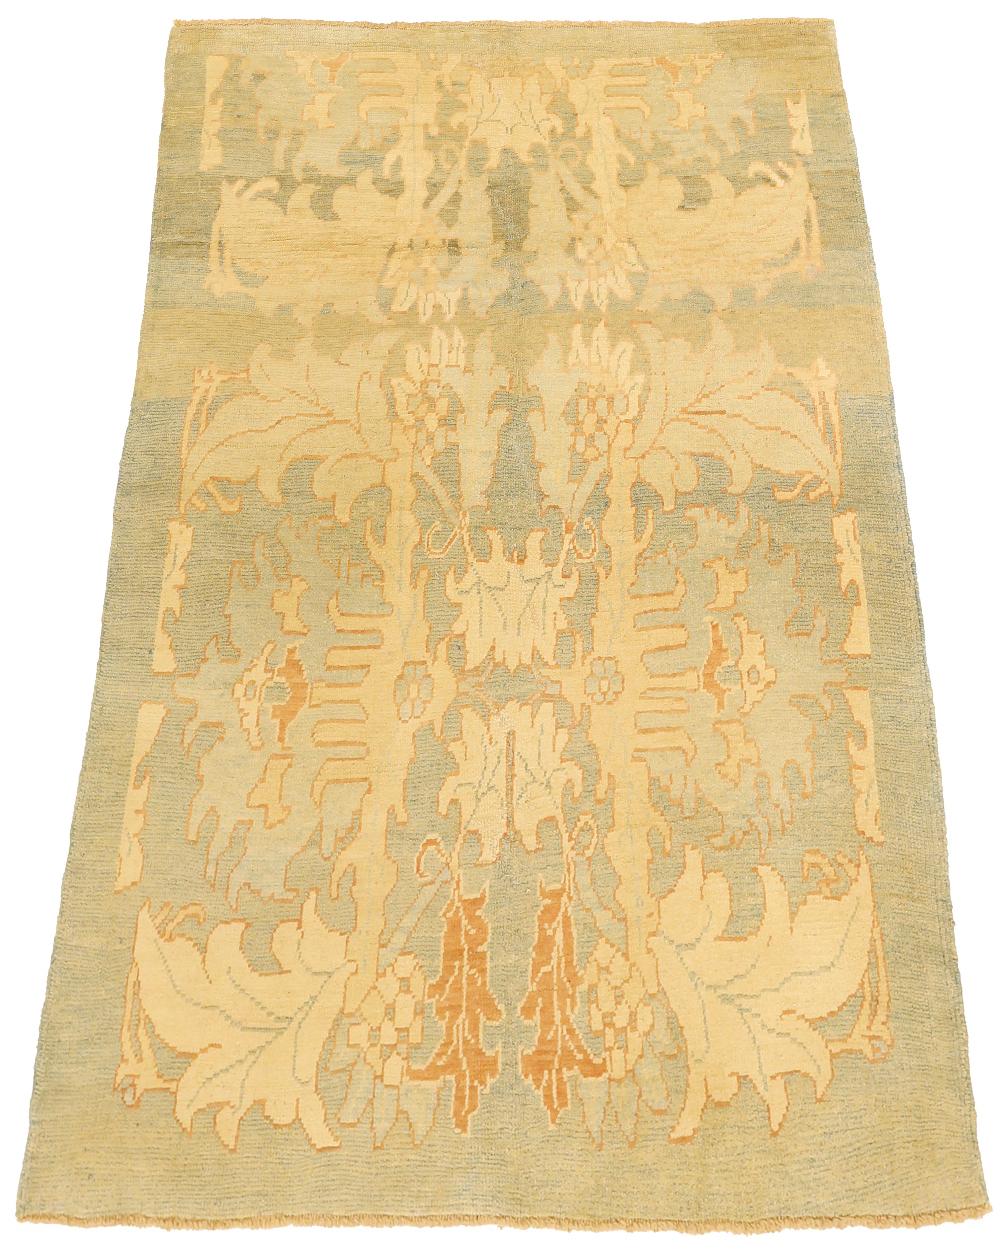 Moderner handgefertigter türkischer Teppich aus hochwertiger Schafwolle und gefärbt mit umweltfreundlichen Pflanzenfarben, die nachweislich für Menschen und Haustiere gleichermaßen sicher sind. Es handelt sich um ein Donegal-Design mit einem